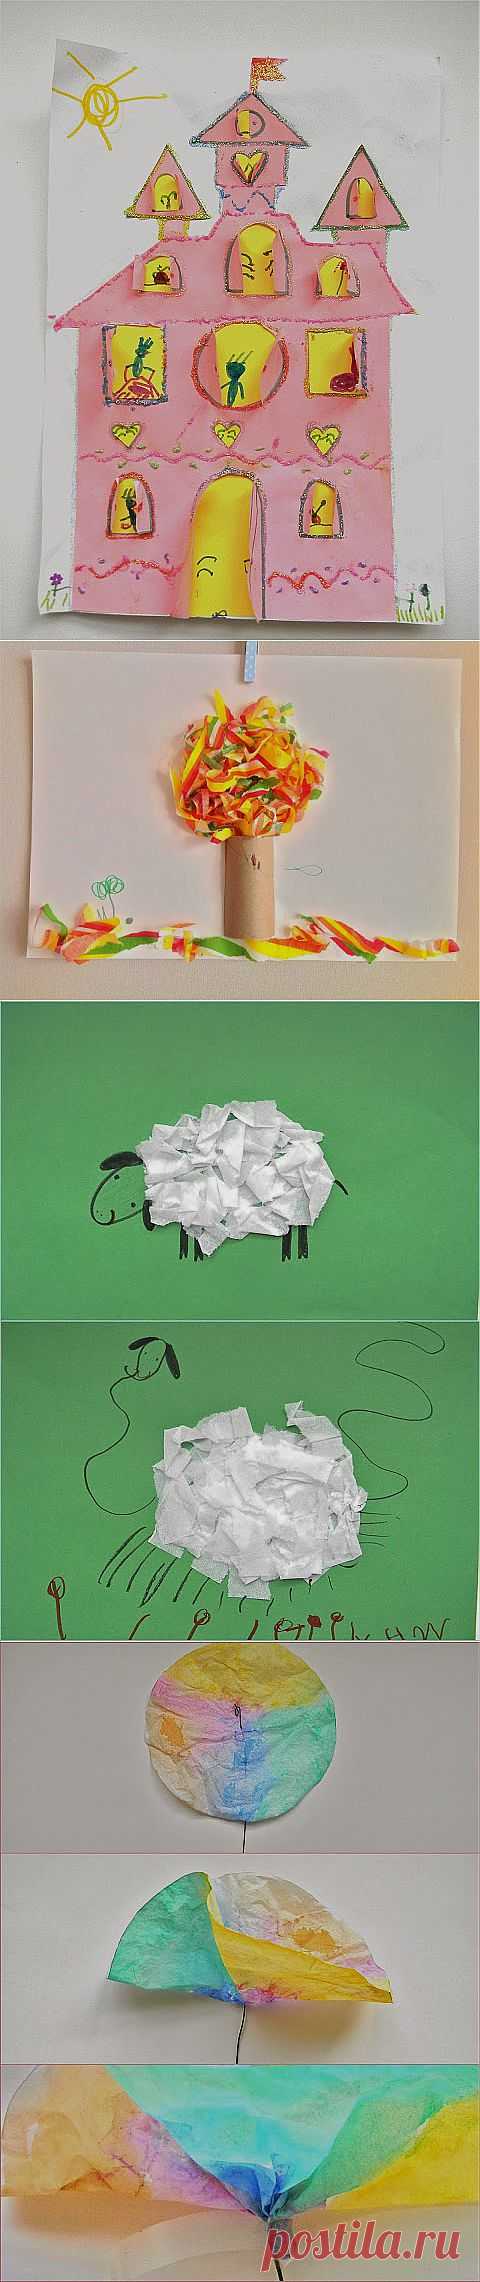 8 идей бумажных поделок с детьми - Ярмарка Мастеров - ручная работа, handmade